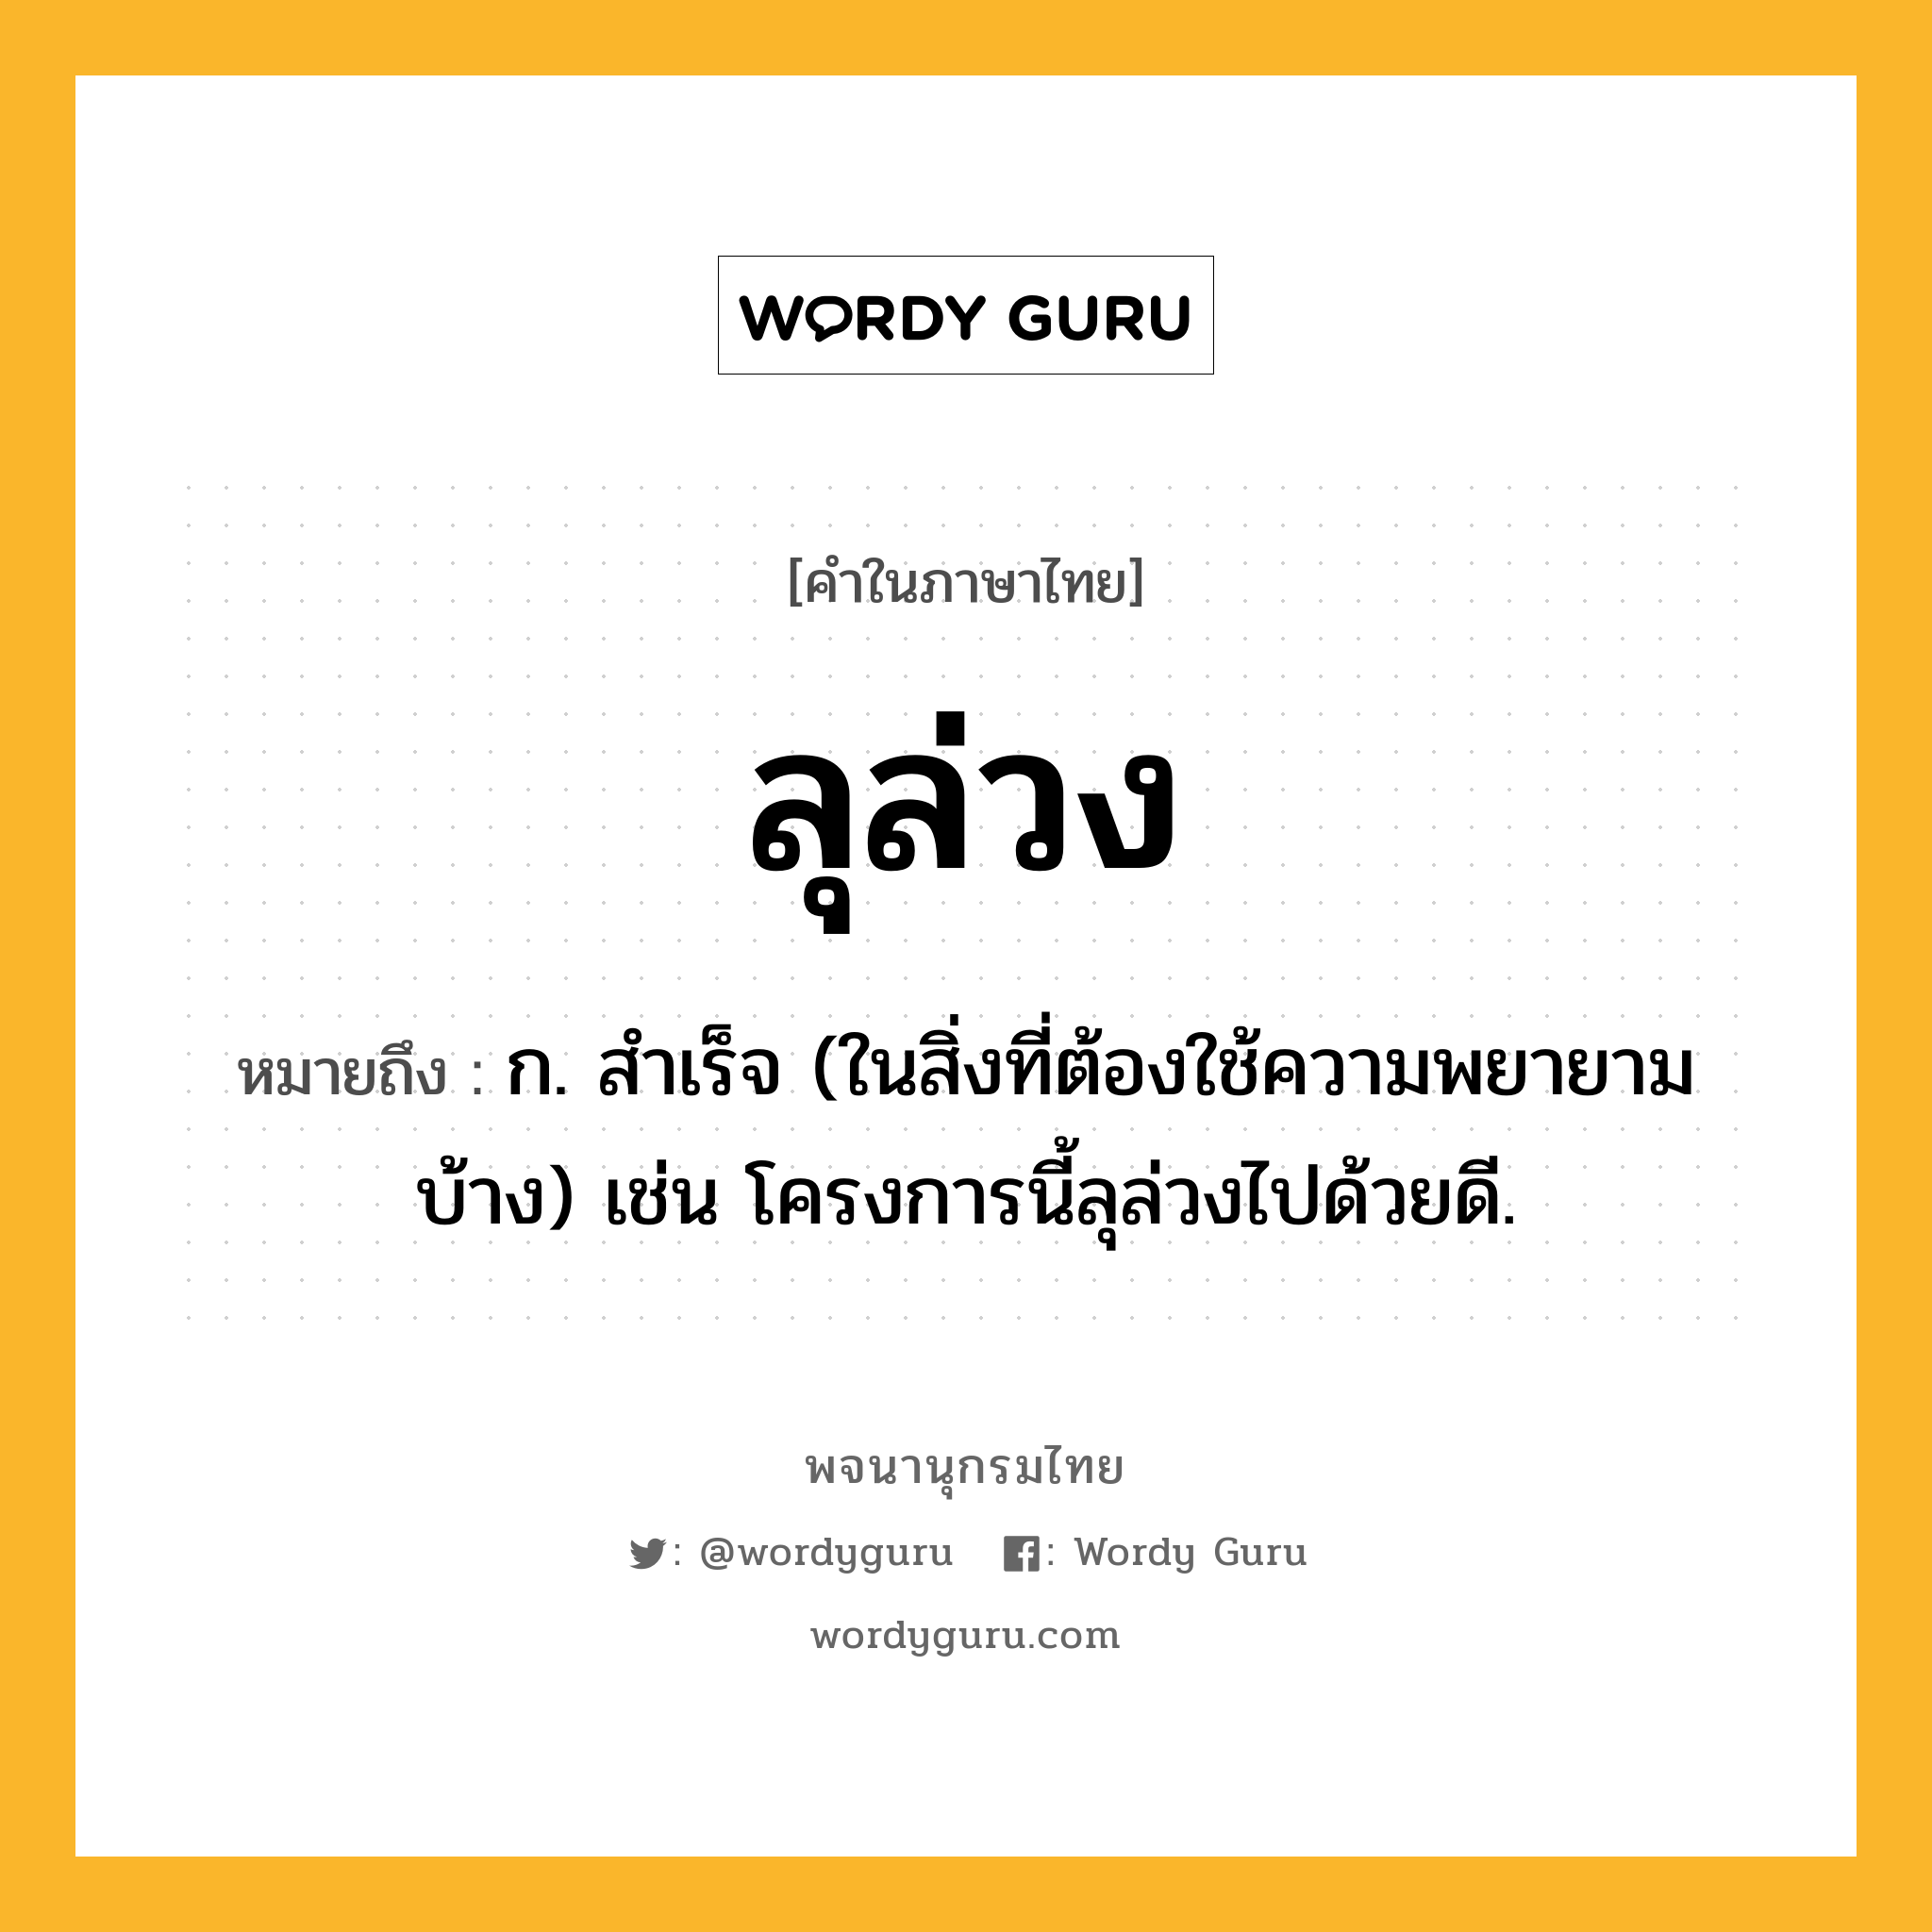 ลุล่วง หมายถึงอะไร?, คำในภาษาไทย ลุล่วง หมายถึง ก. สำเร็จ (ในสิ่งที่ต้องใช้ความพยายามบ้าง) เช่น โครงการนี้ลุล่วงไปด้วยดี.